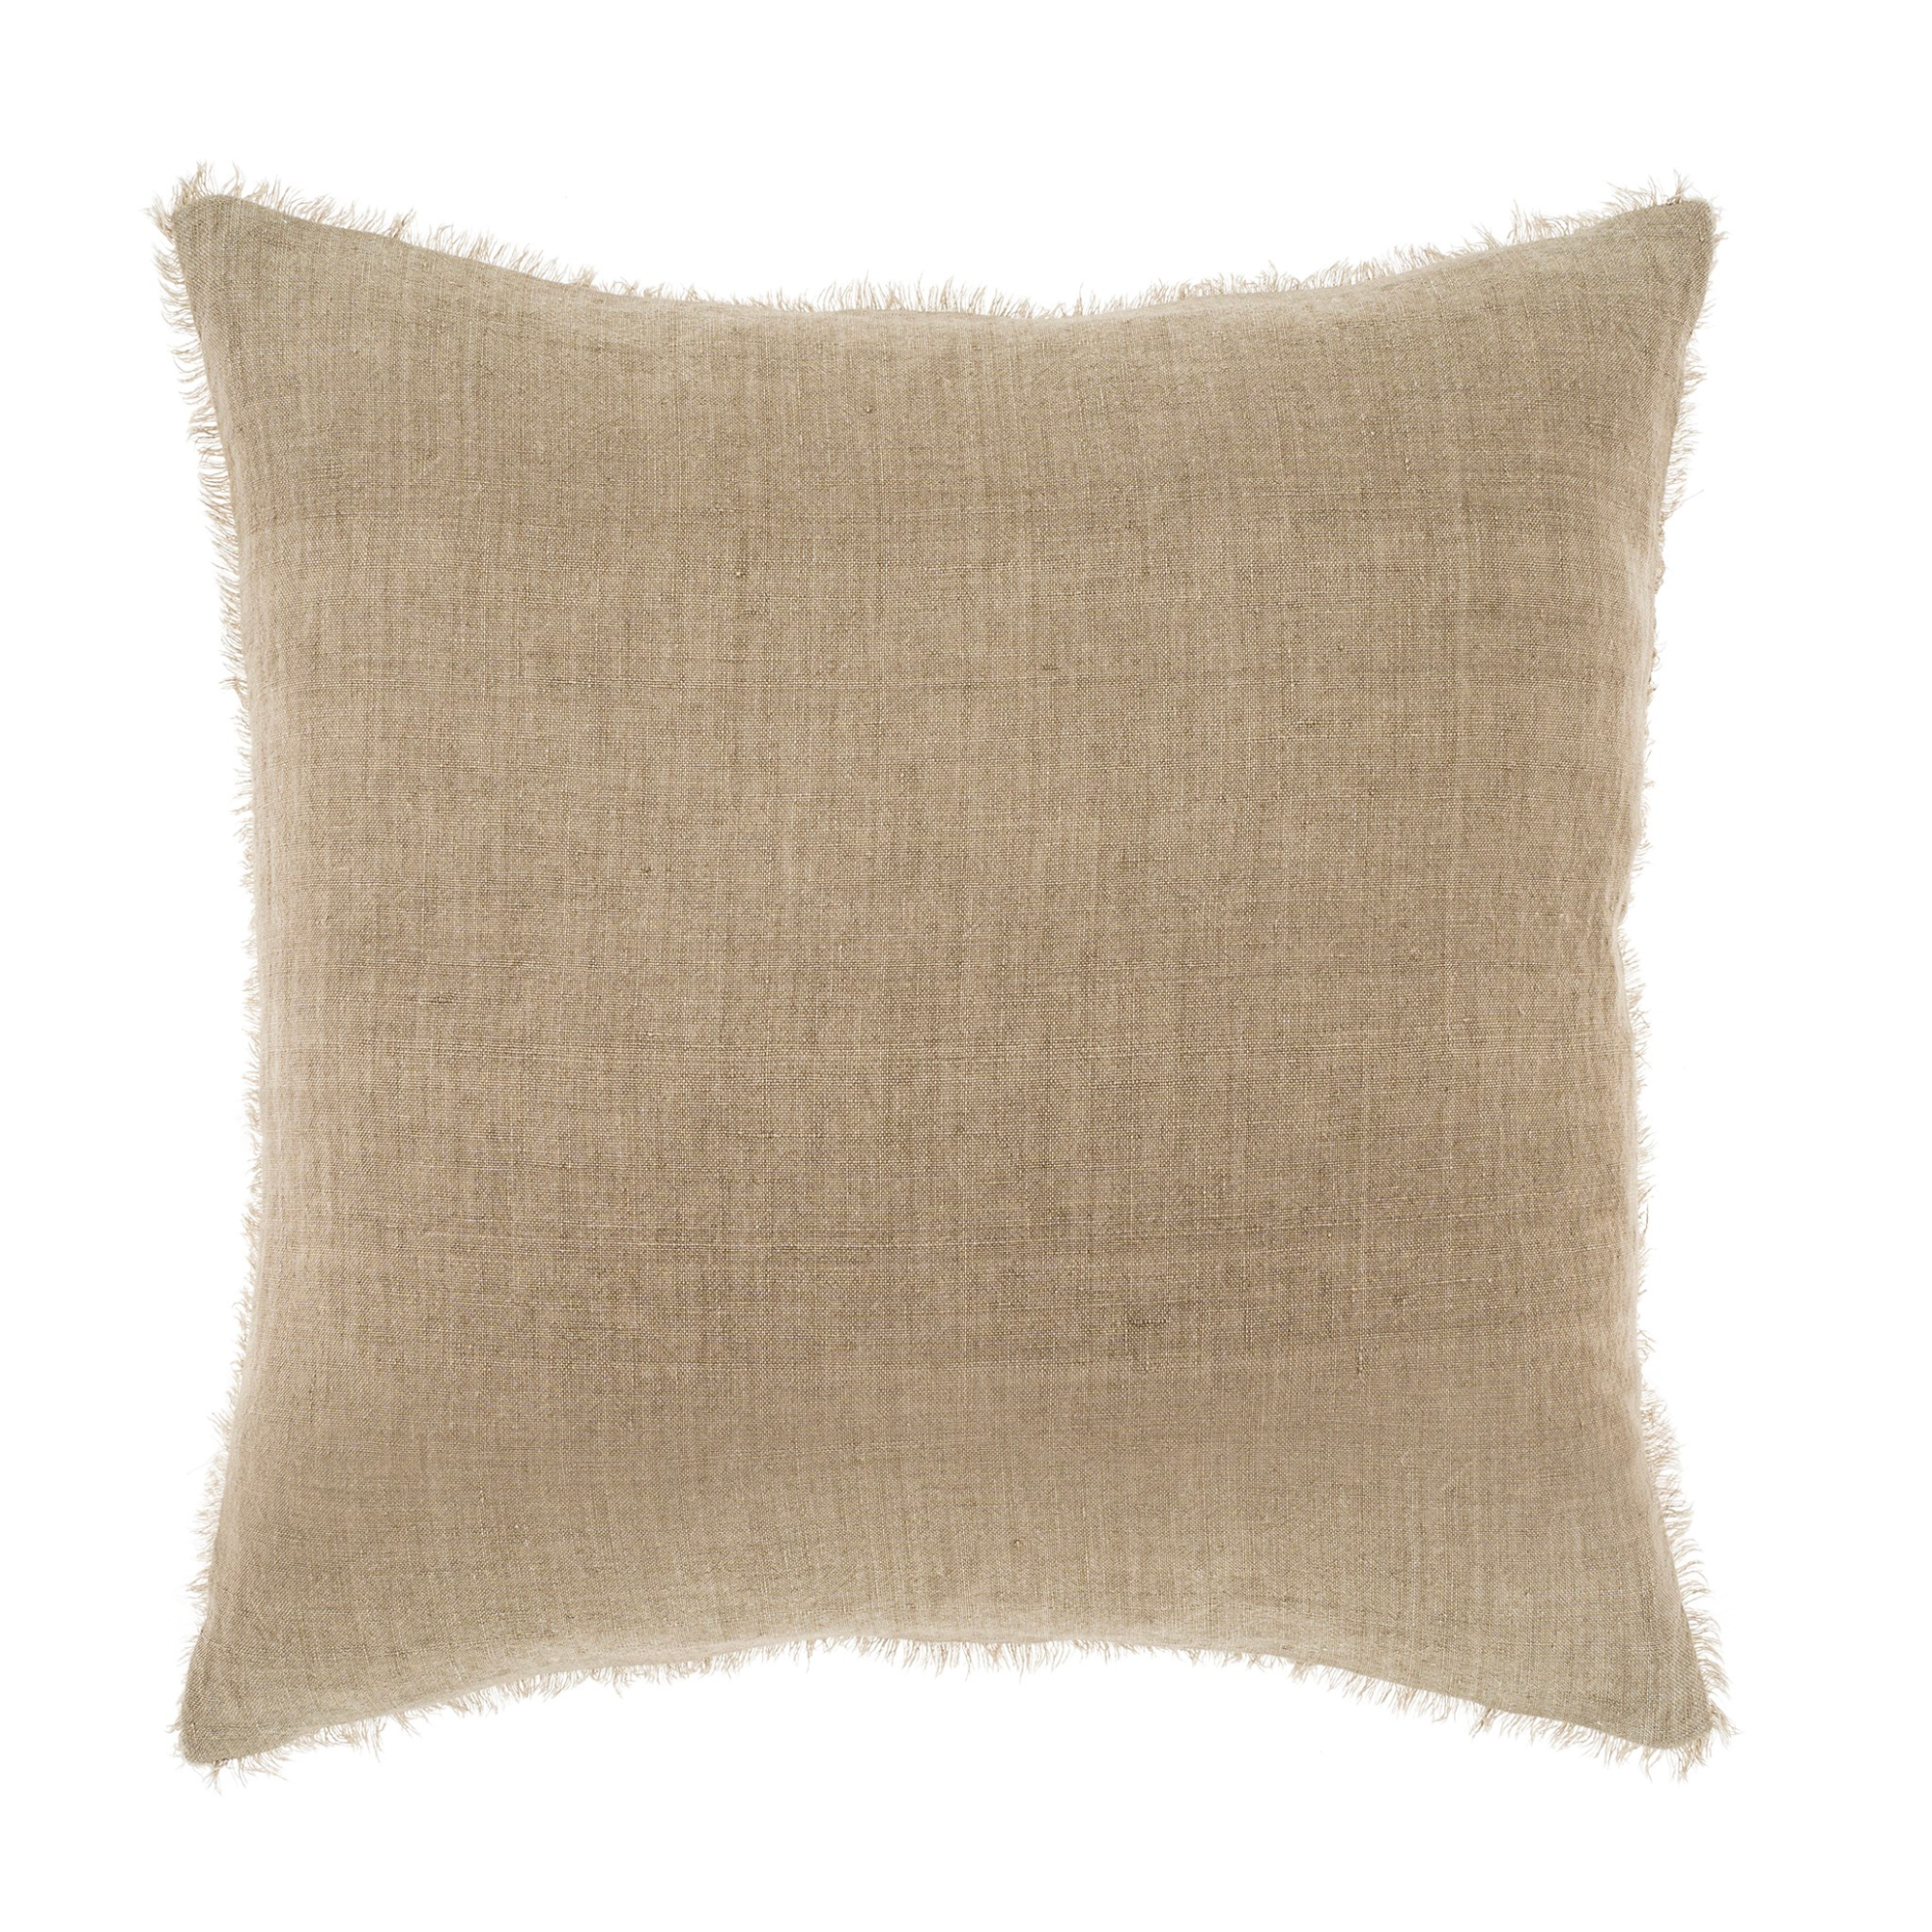 Layna Linen Pillow - Sand